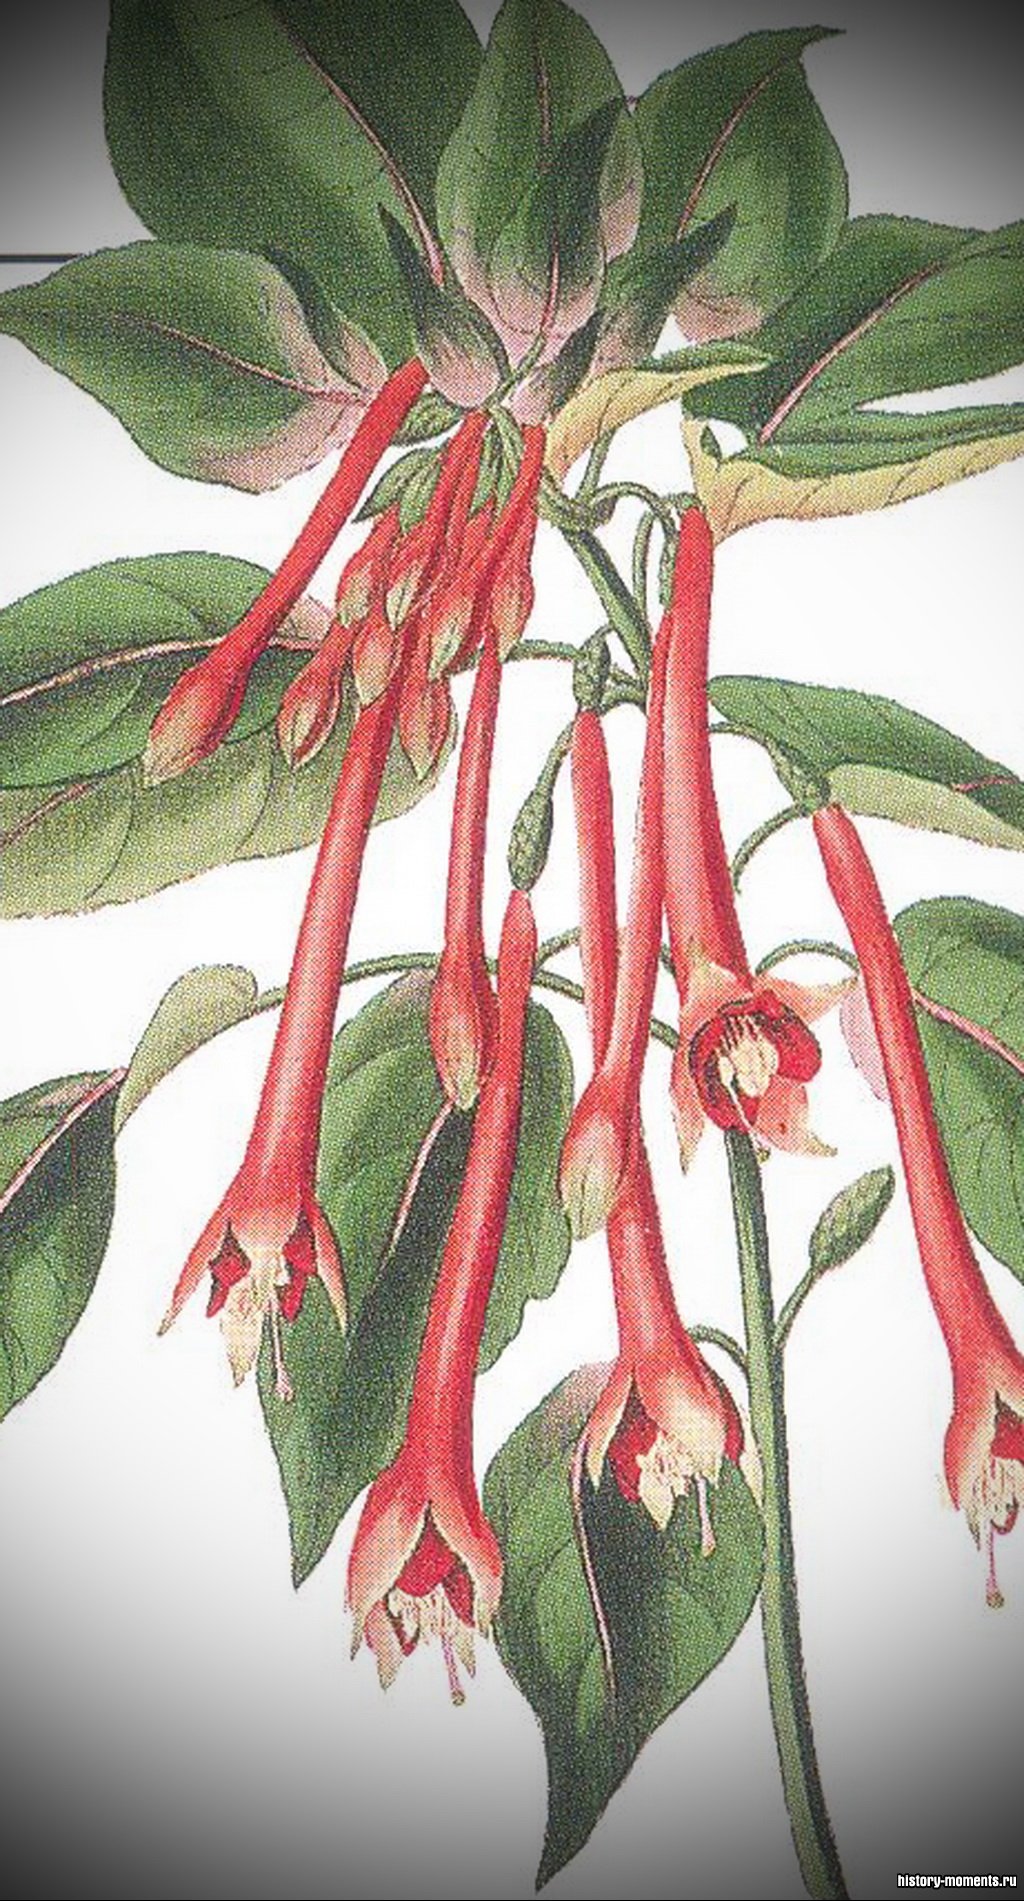 Научные названия растений пишутся по-латыни. Это Fuchsia (фуксия огненная) из каталога растений XIX в.